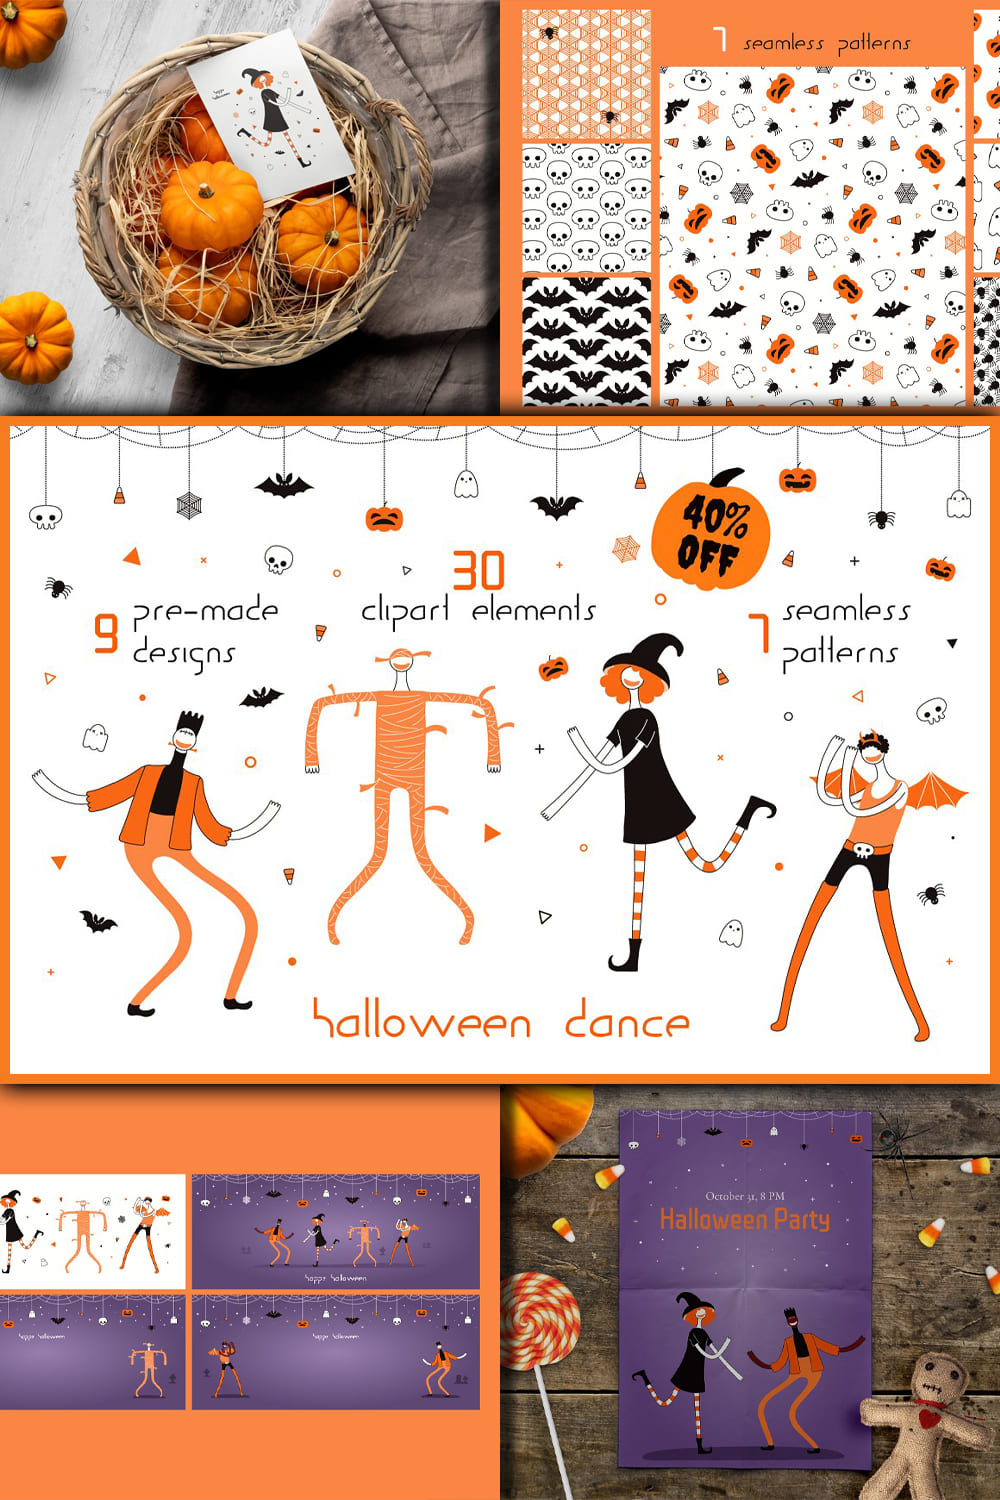 4185550 halloween dance vector graphics pinterest 1000 1500